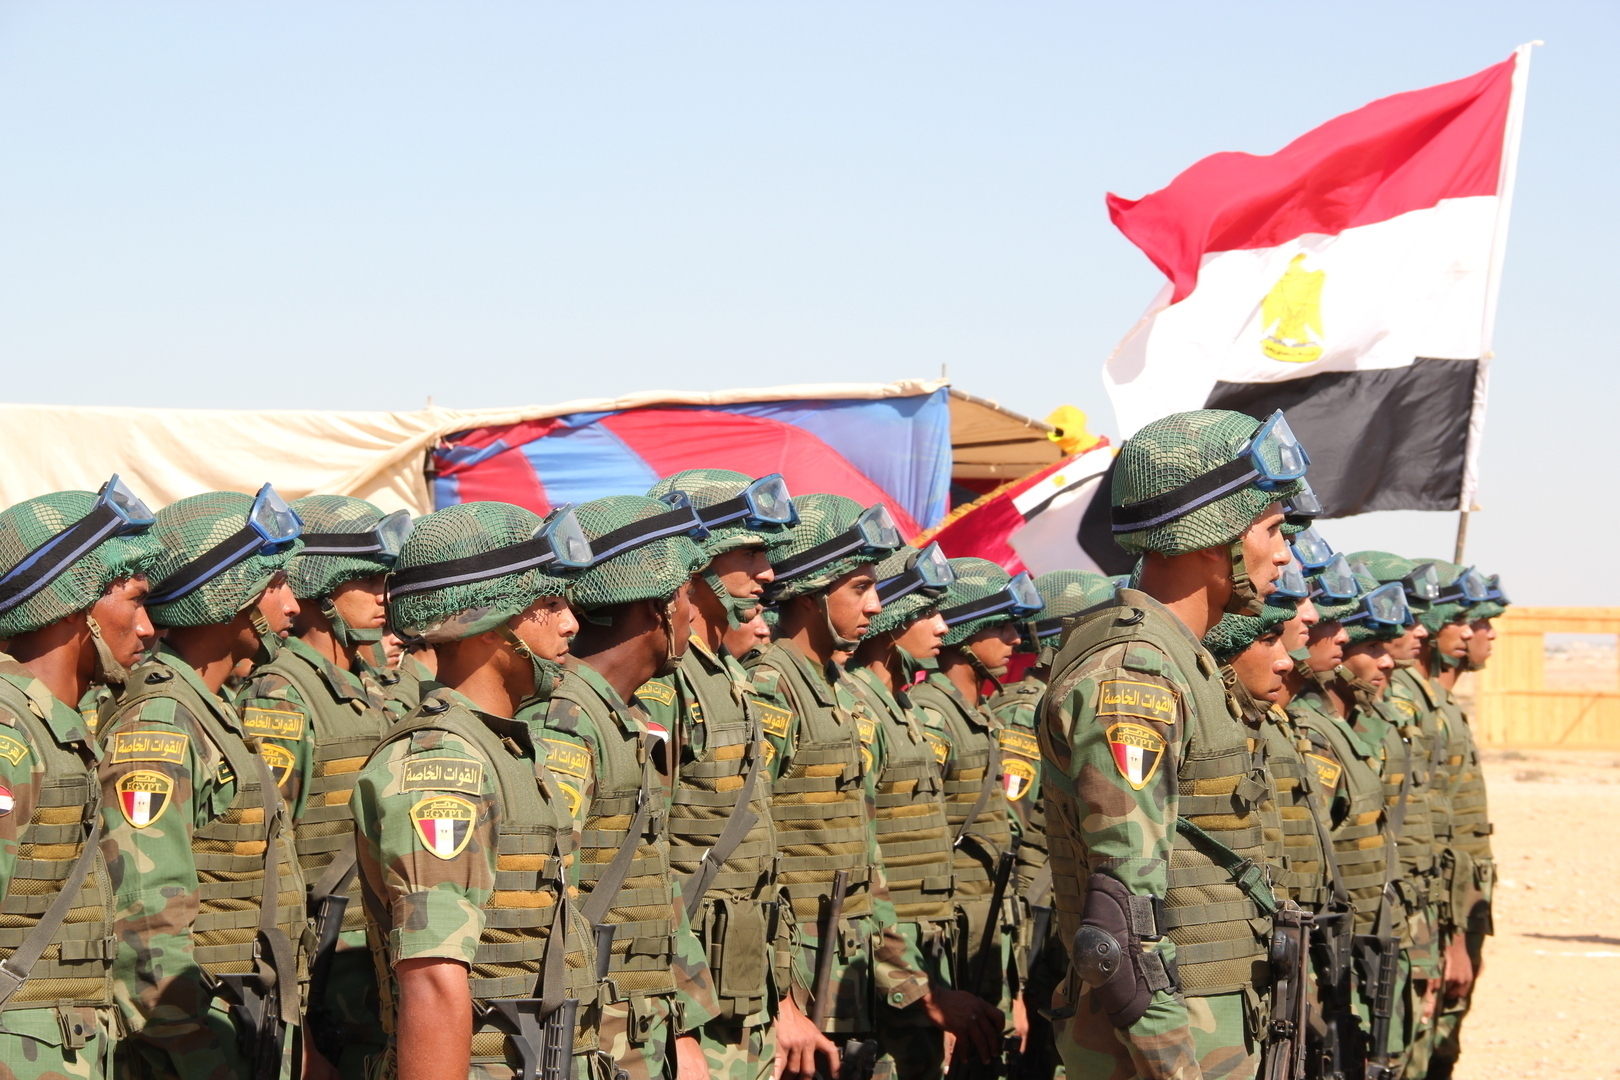 الجيش المصري يتفوق على الجيش التركي والإسرائيلي في أقوى جيوش العالم والمنطقة (صورة)